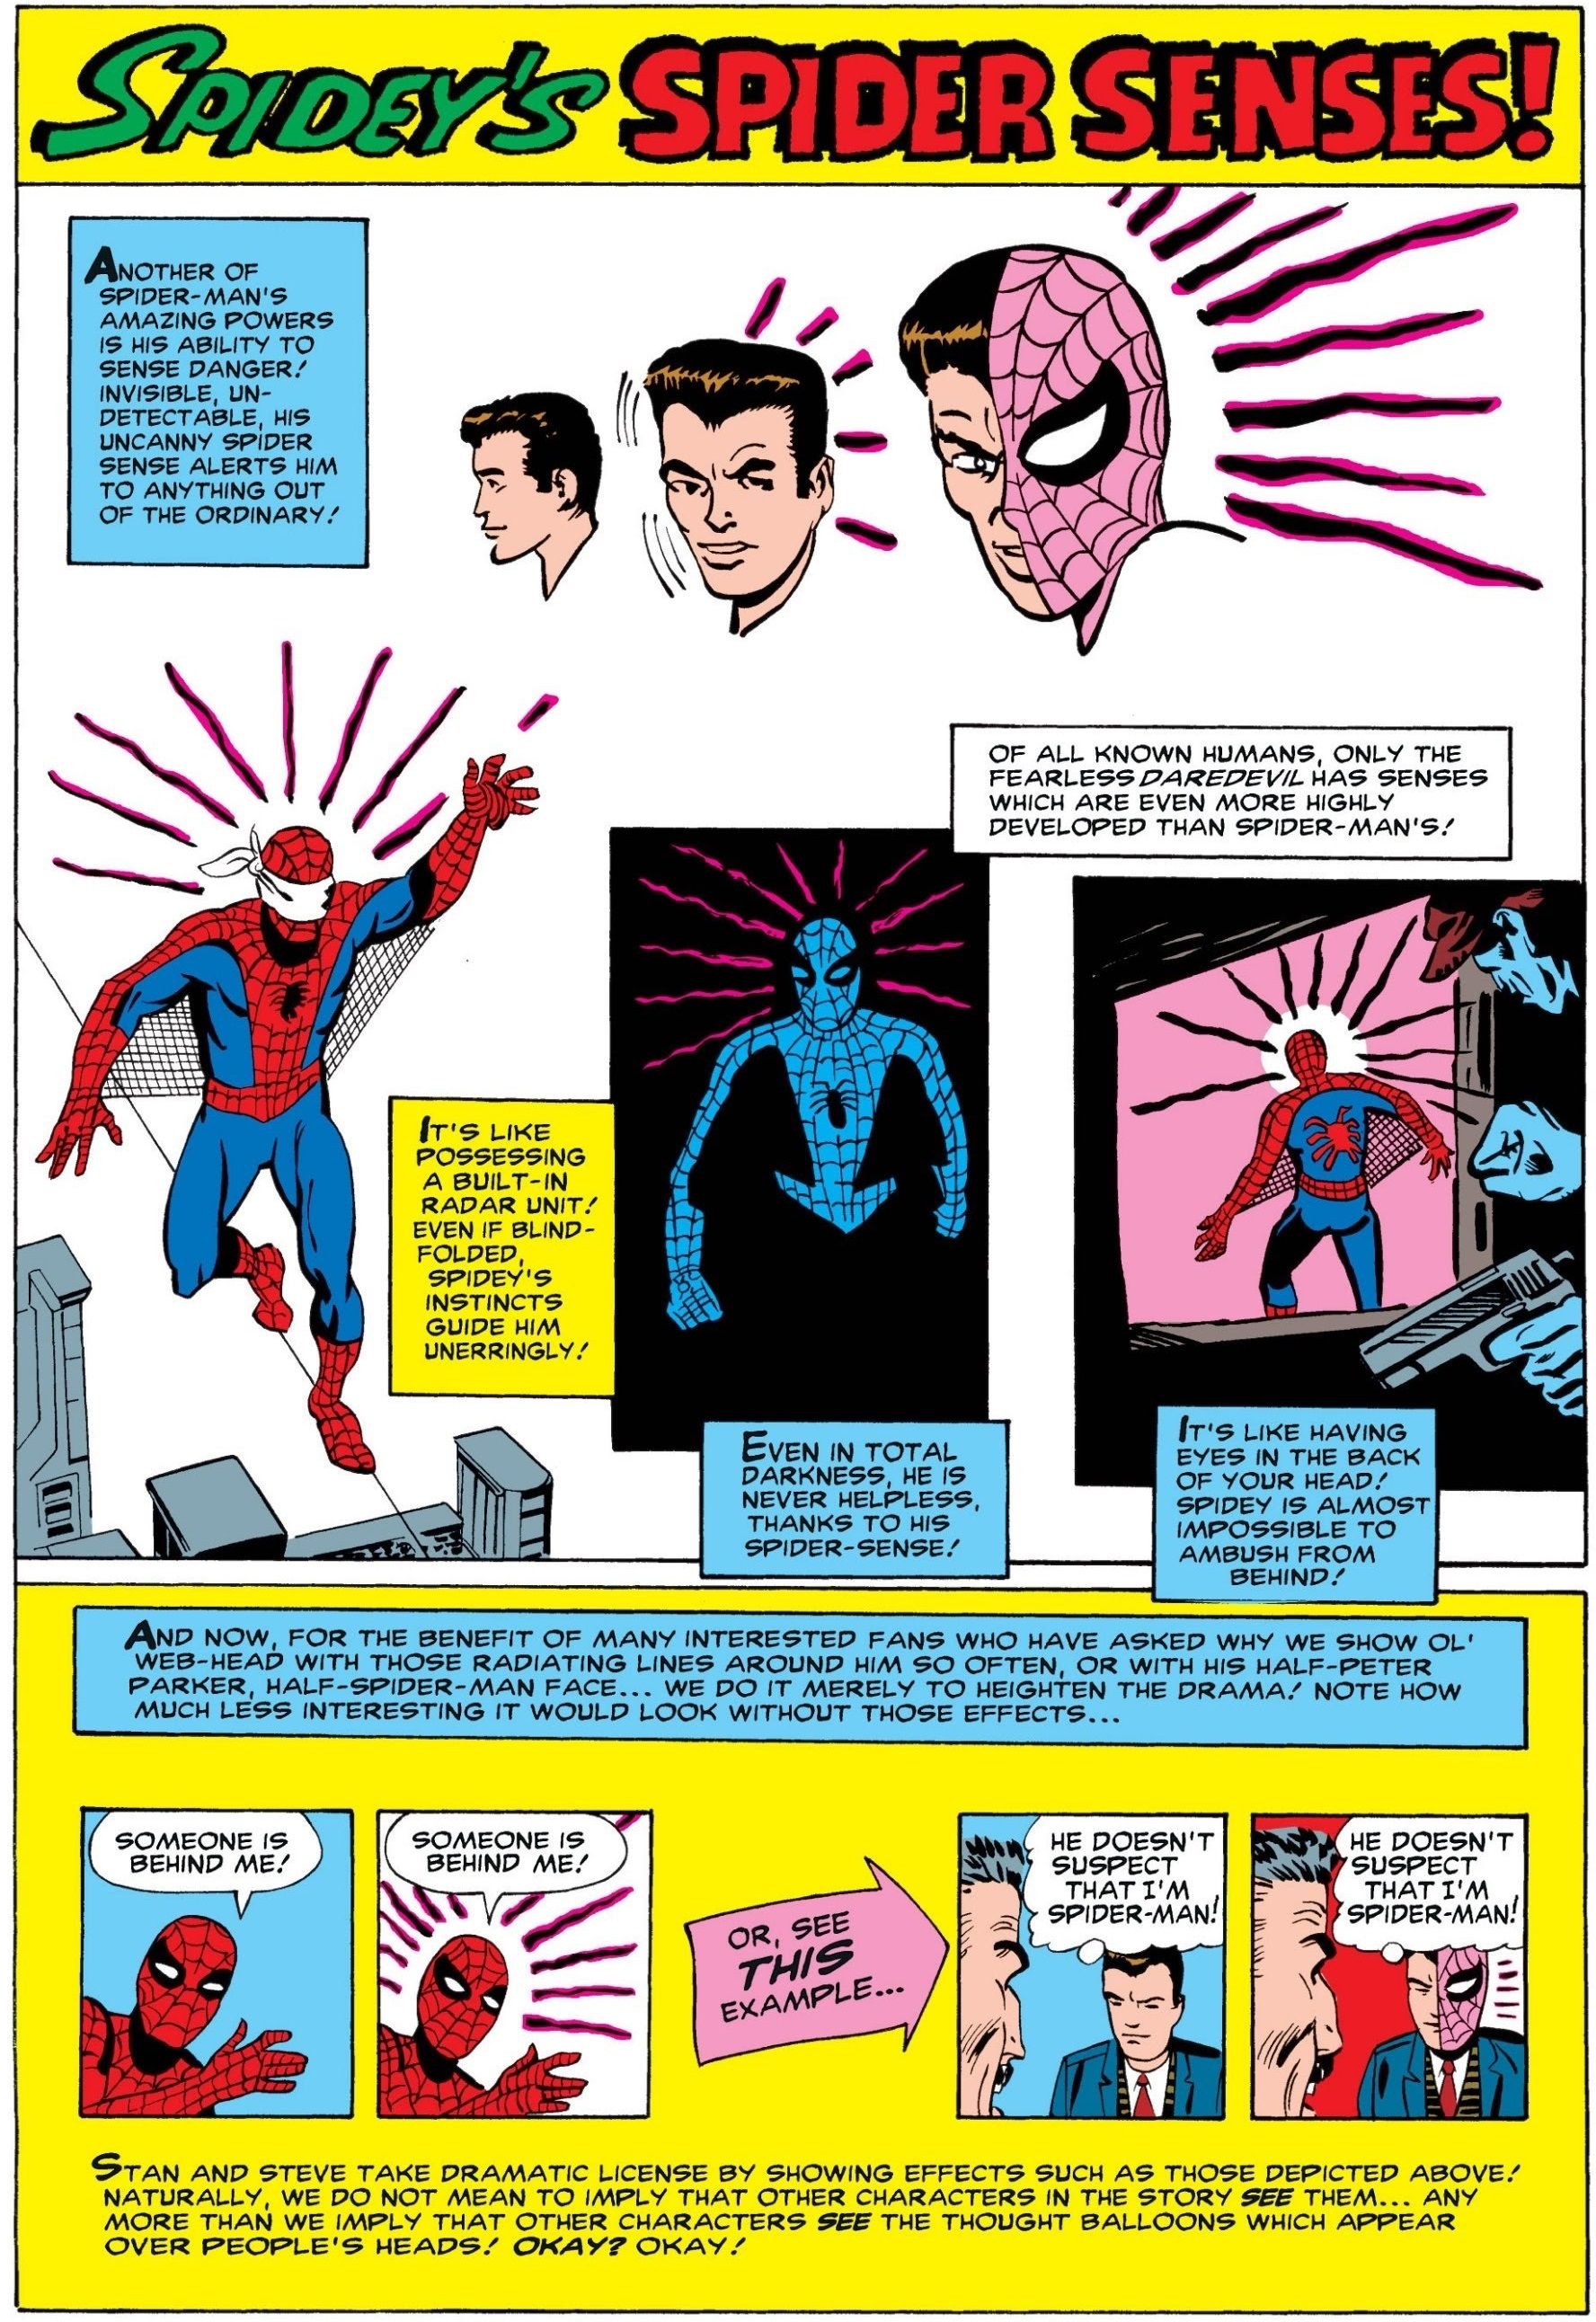 Uma explicação para a meia máscara do Homem-Aranha